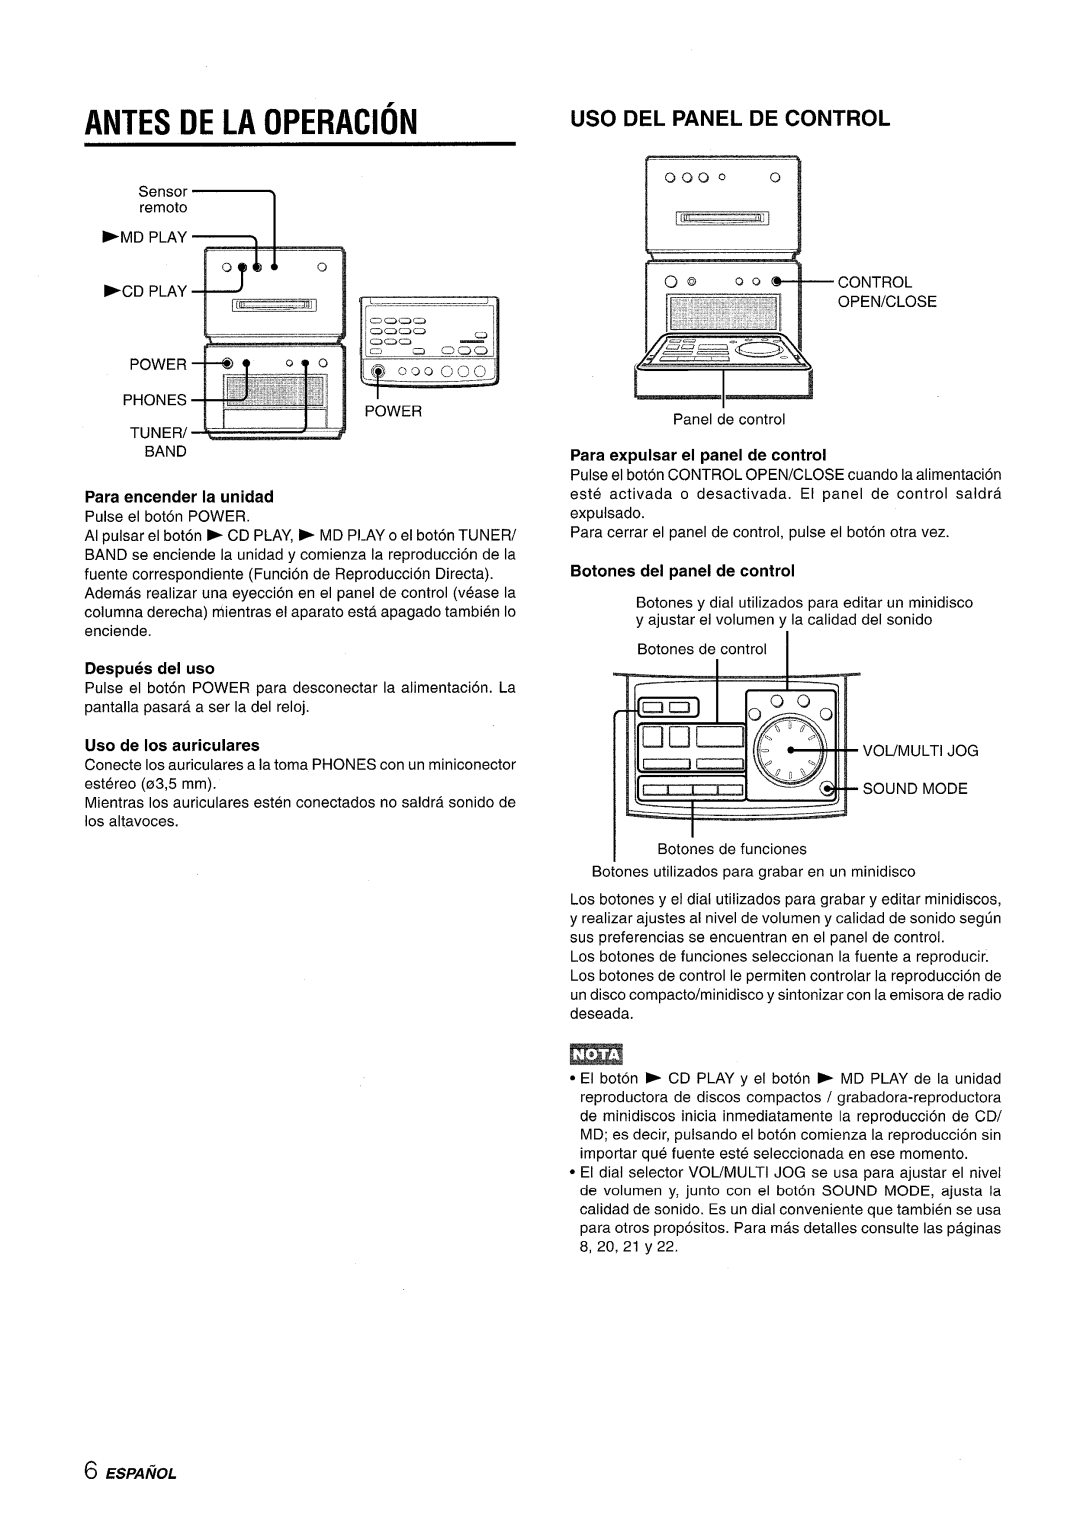 Aiwa XR-MD95 manual Antes De La Operacion, Uso Del Panel De Control, Para encender la unidad, Uso de Ios auriculares, 0000 